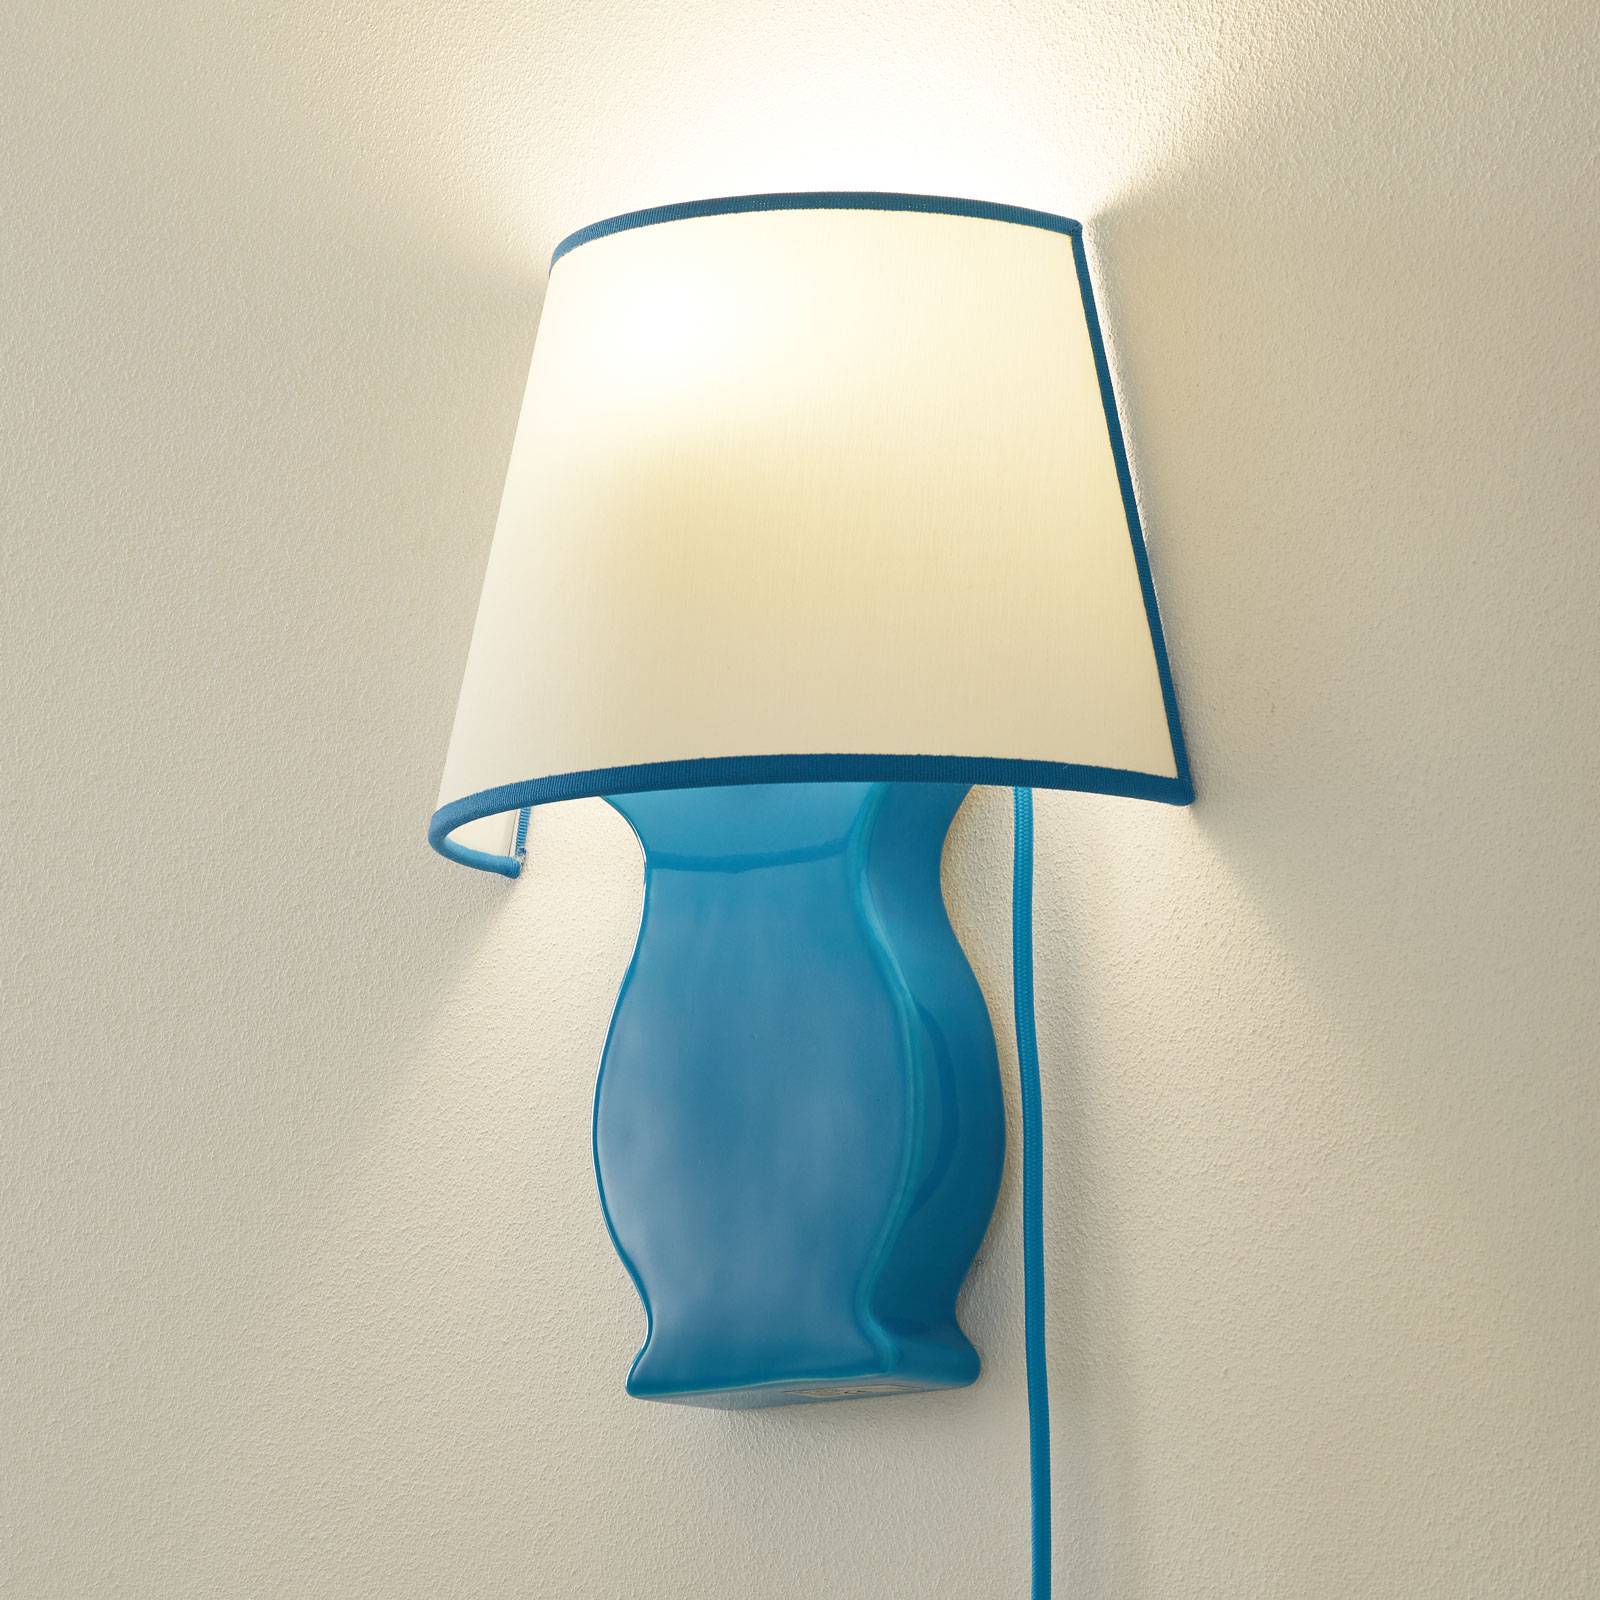 Kerámia fali lámpa A184 szövetbúrával, kék